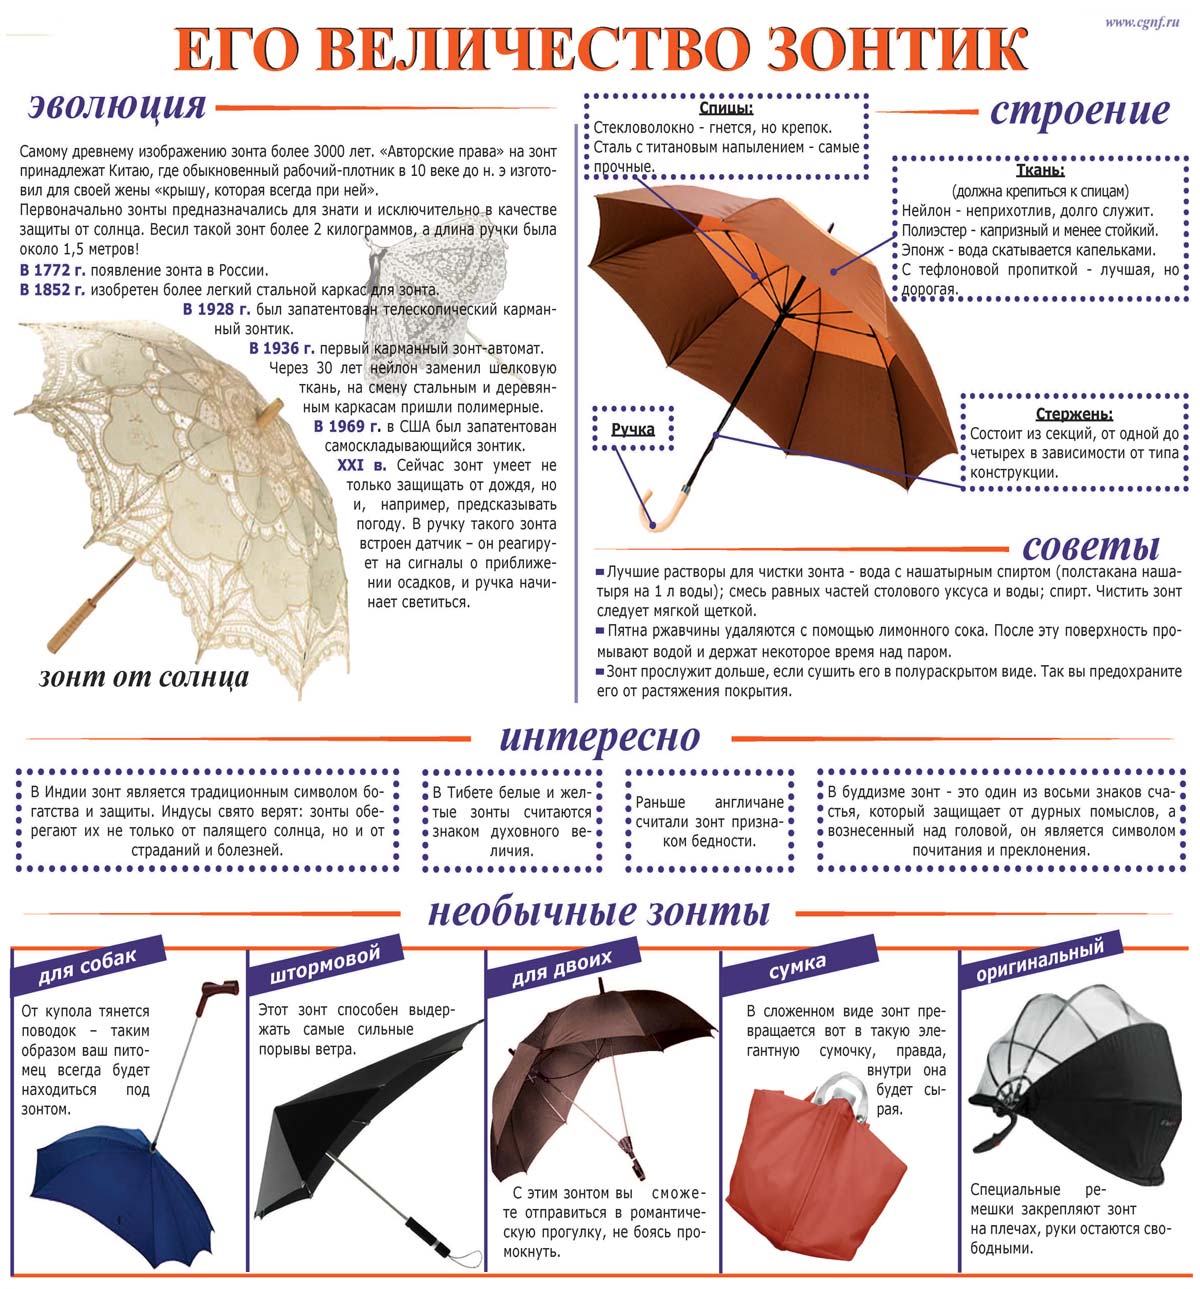 Из чего состоит зонт. Строение зонтика. Названия частей зонтика. Детали зонтика. Роль зонтика